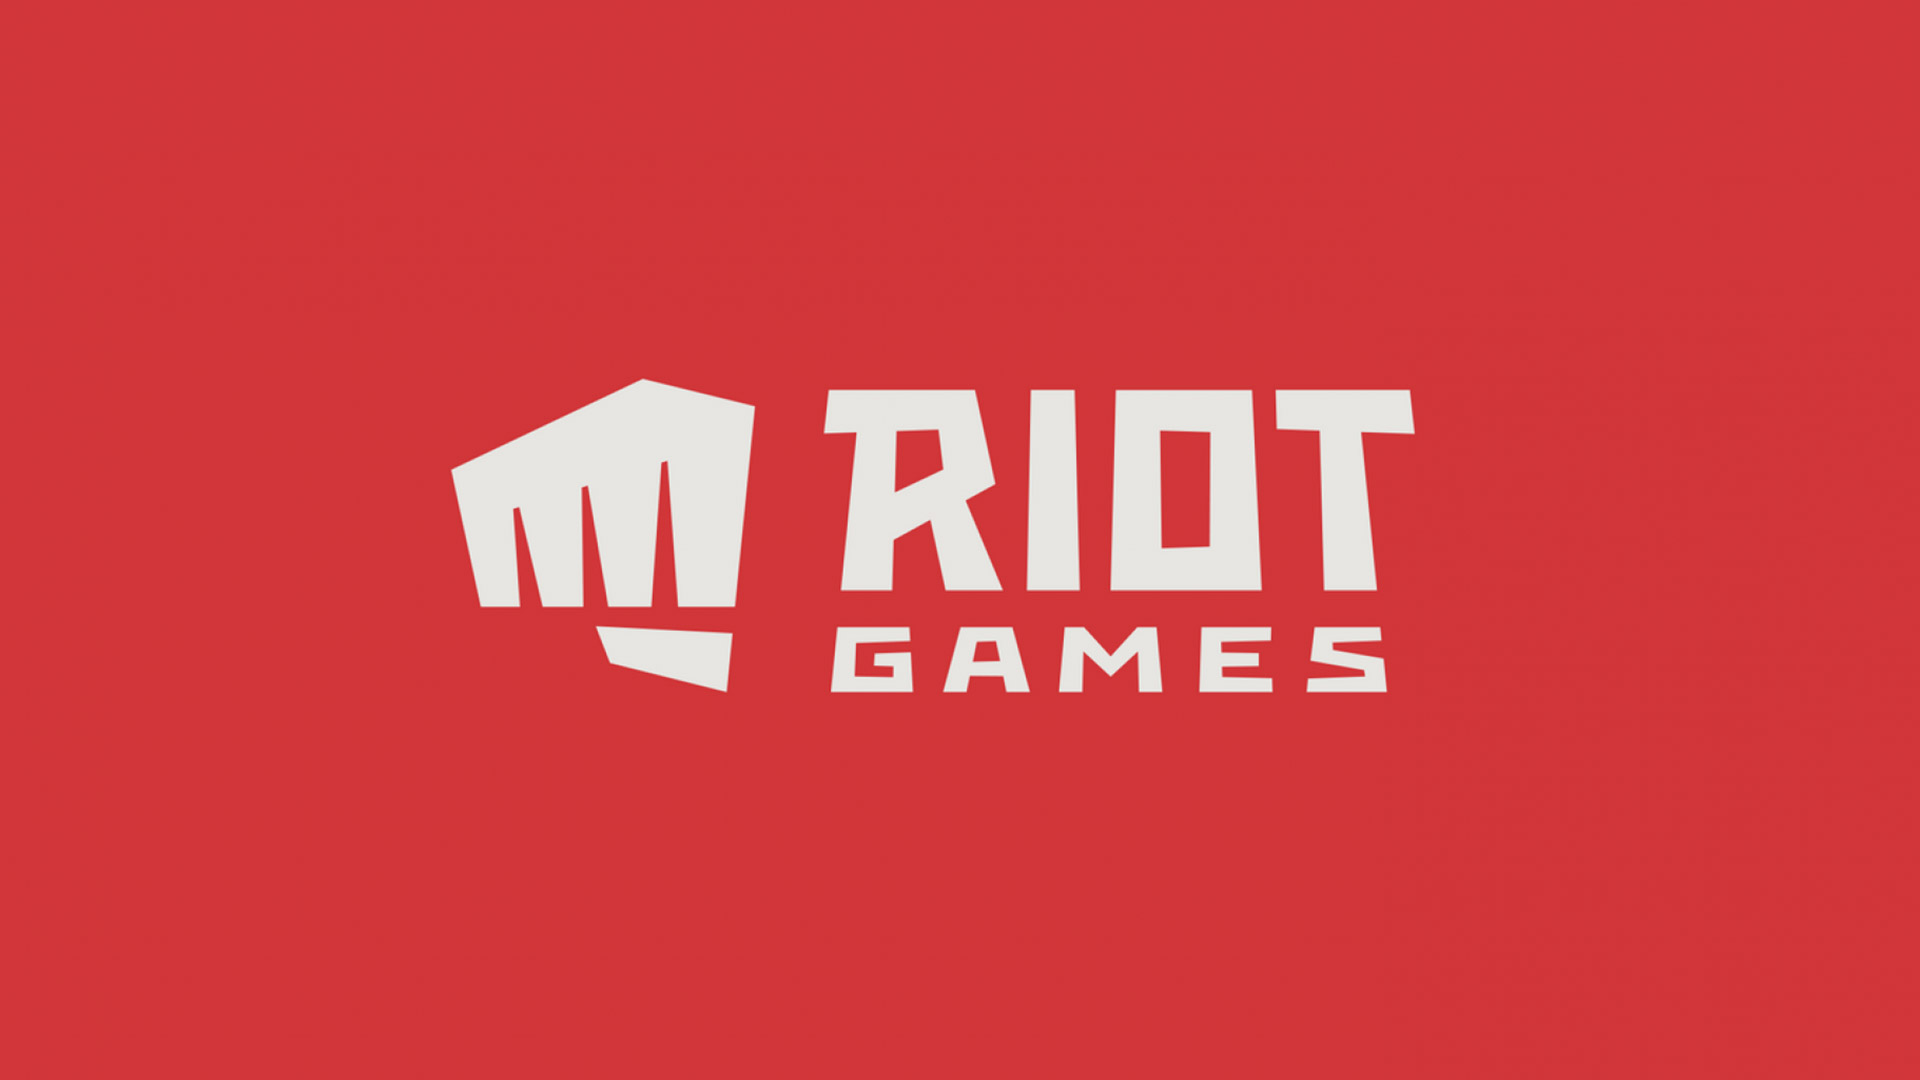 استودیو Riot Games به پرداخت 100 میلیون دلار محکوم شد